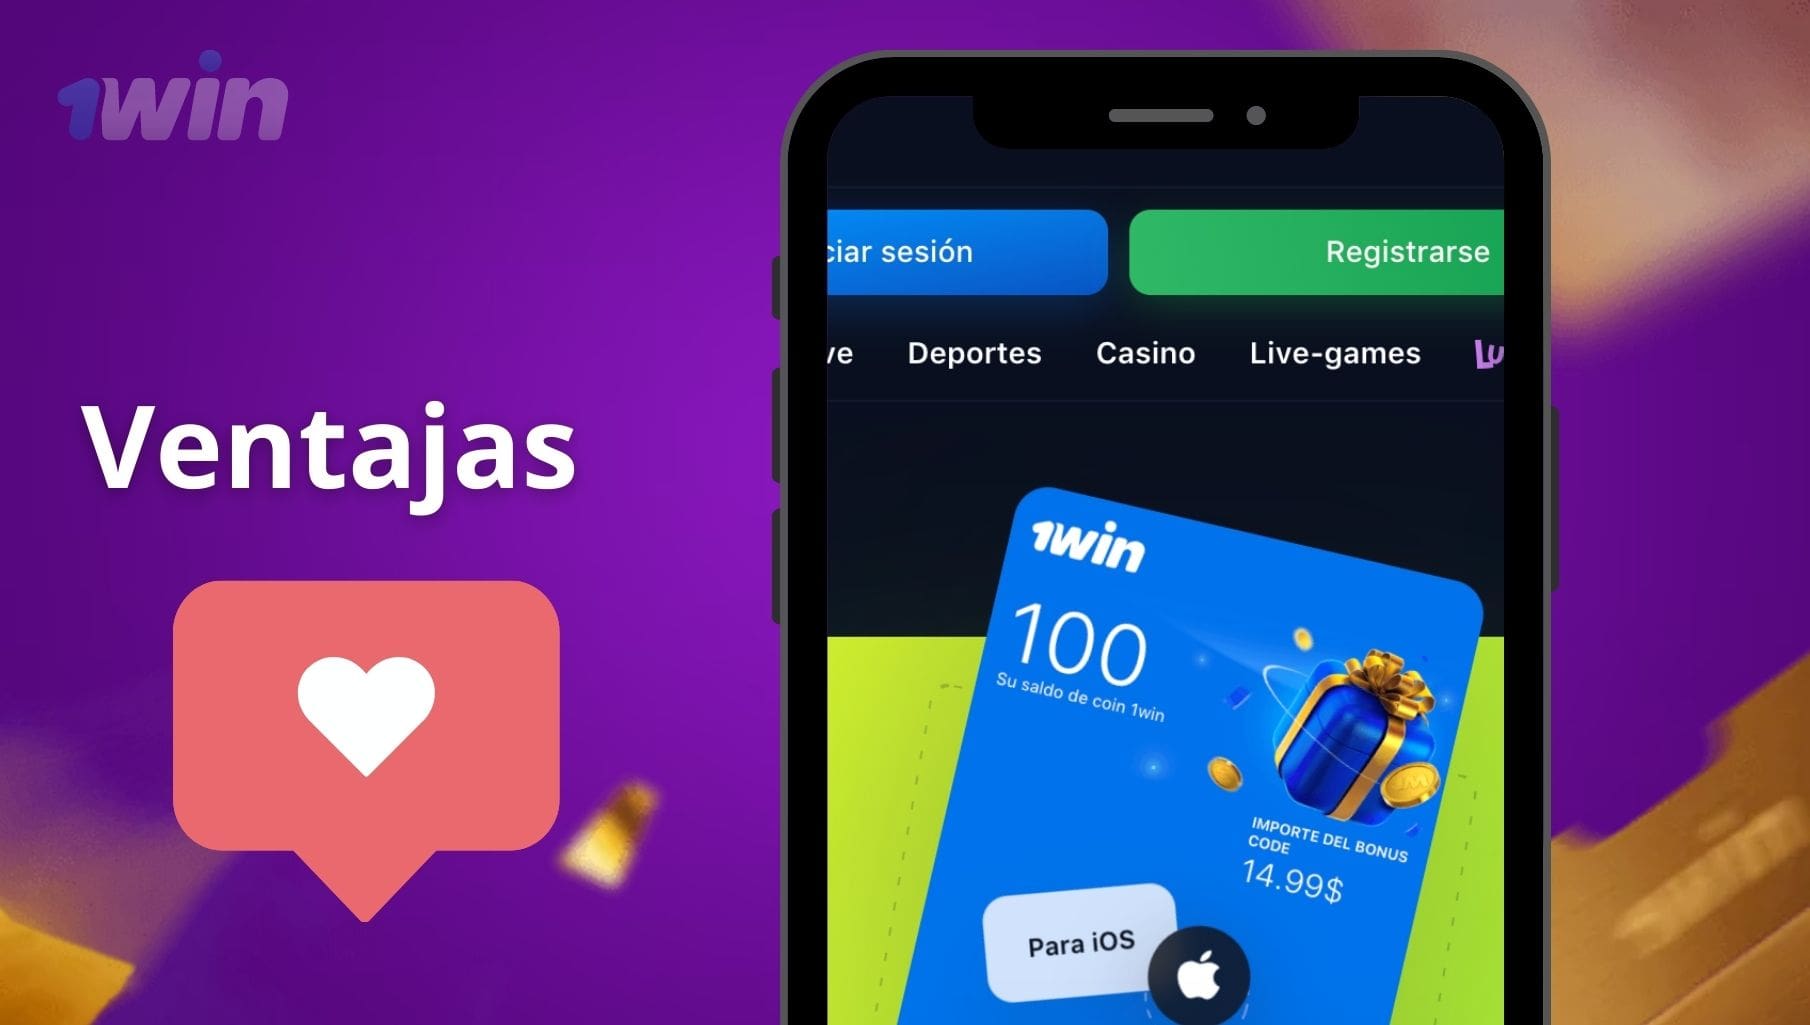 ventajas de la aplicación móvil 1Win Colombia